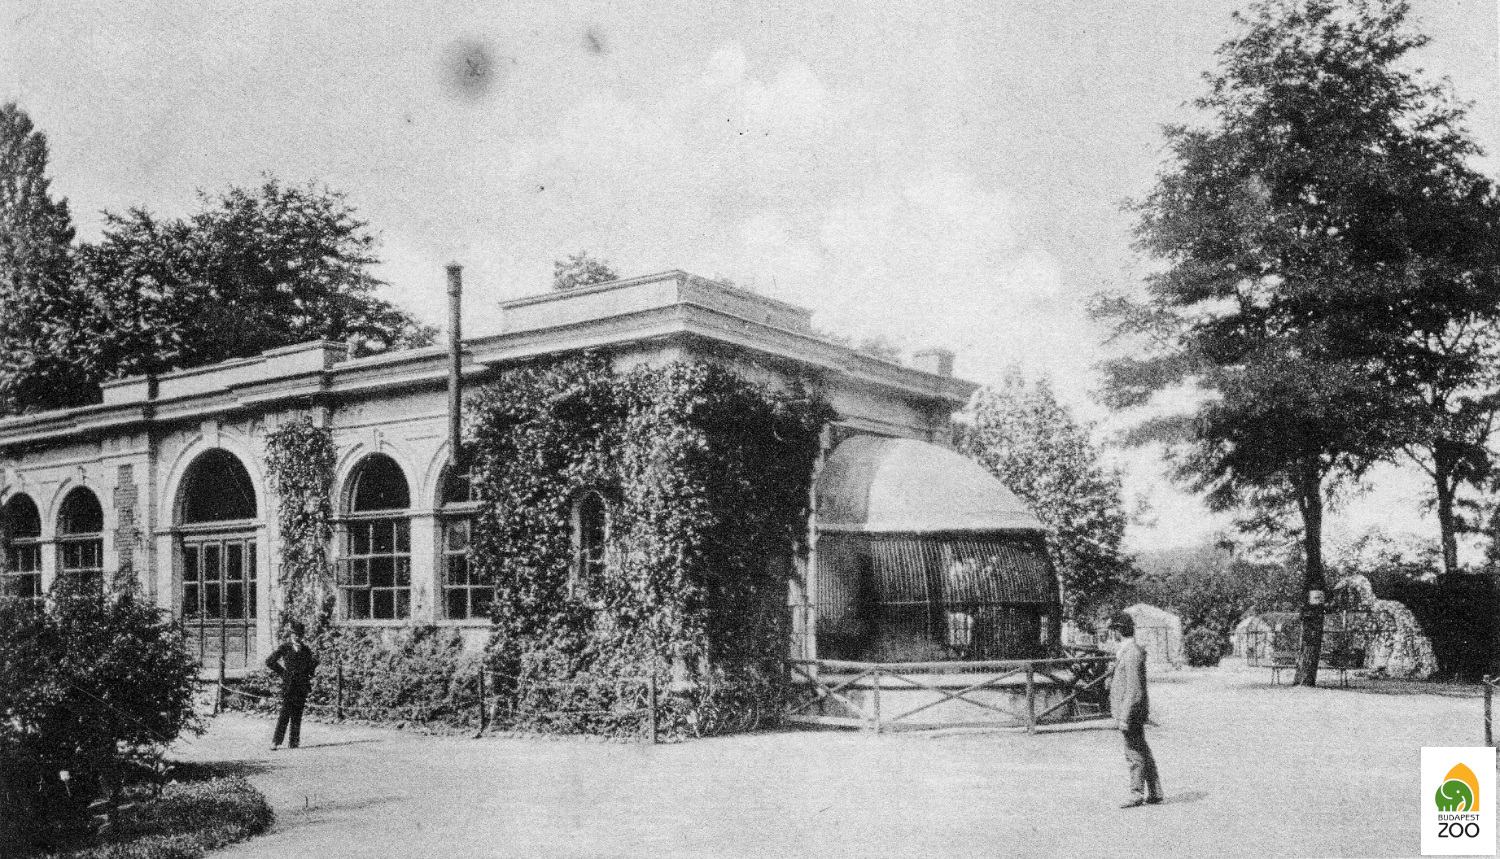 01 - Az Állatkert első, 1876-ban épült oroszlánháza, amelyet a neves építész, Hauszmann Alajos tervezett. A felvételt Divald Károly készítette 1894-ben